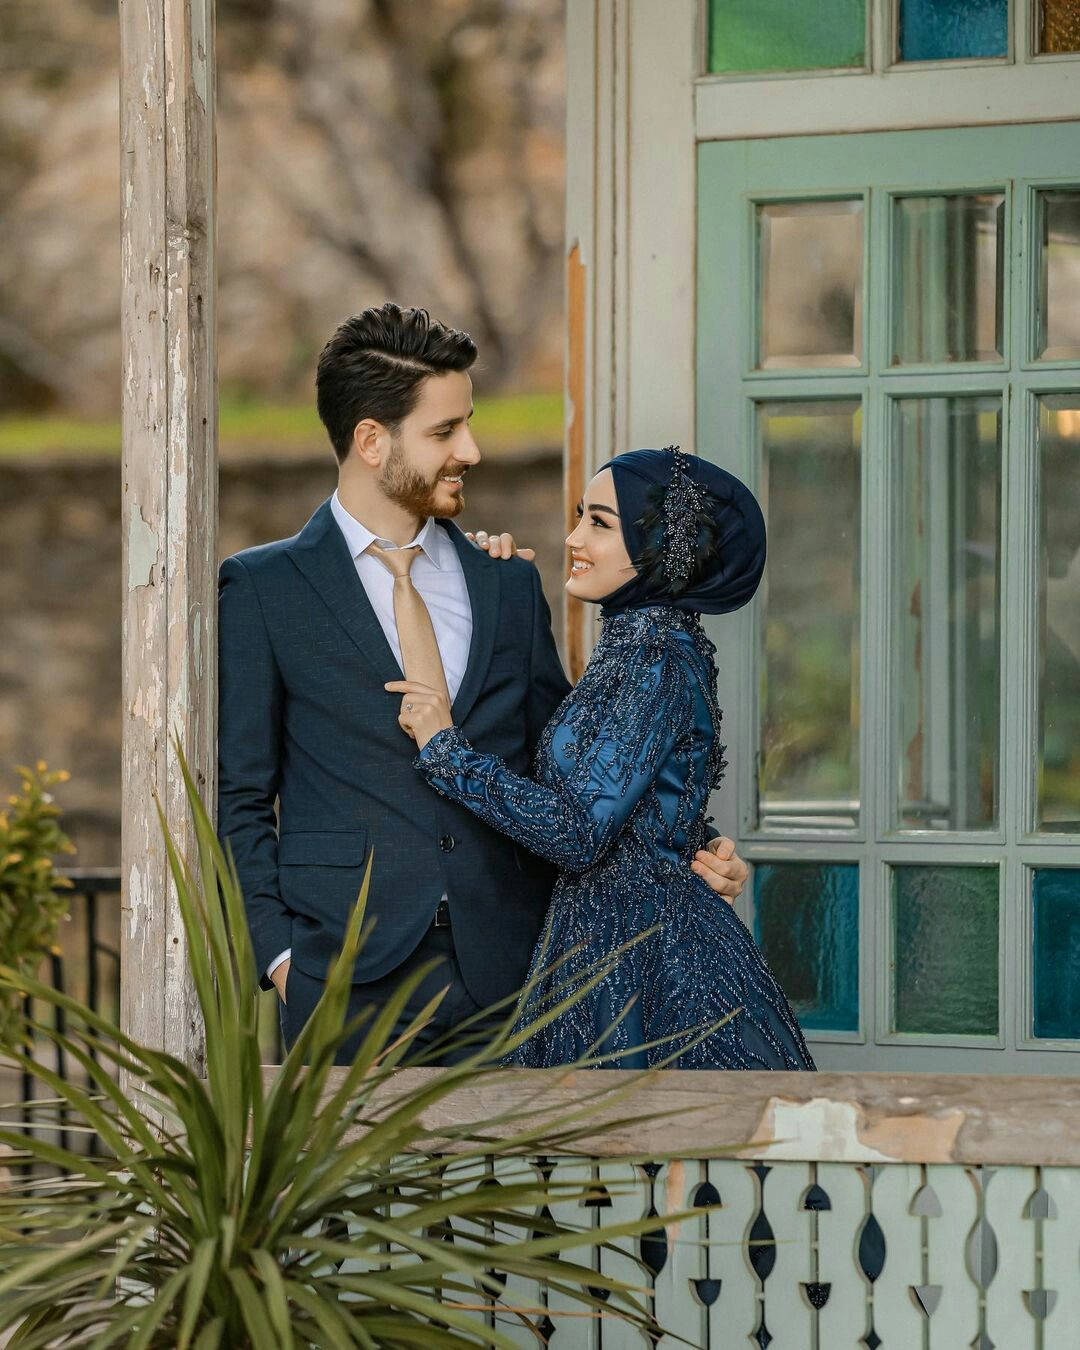 Muslim Couple At Veranda Photoshoot